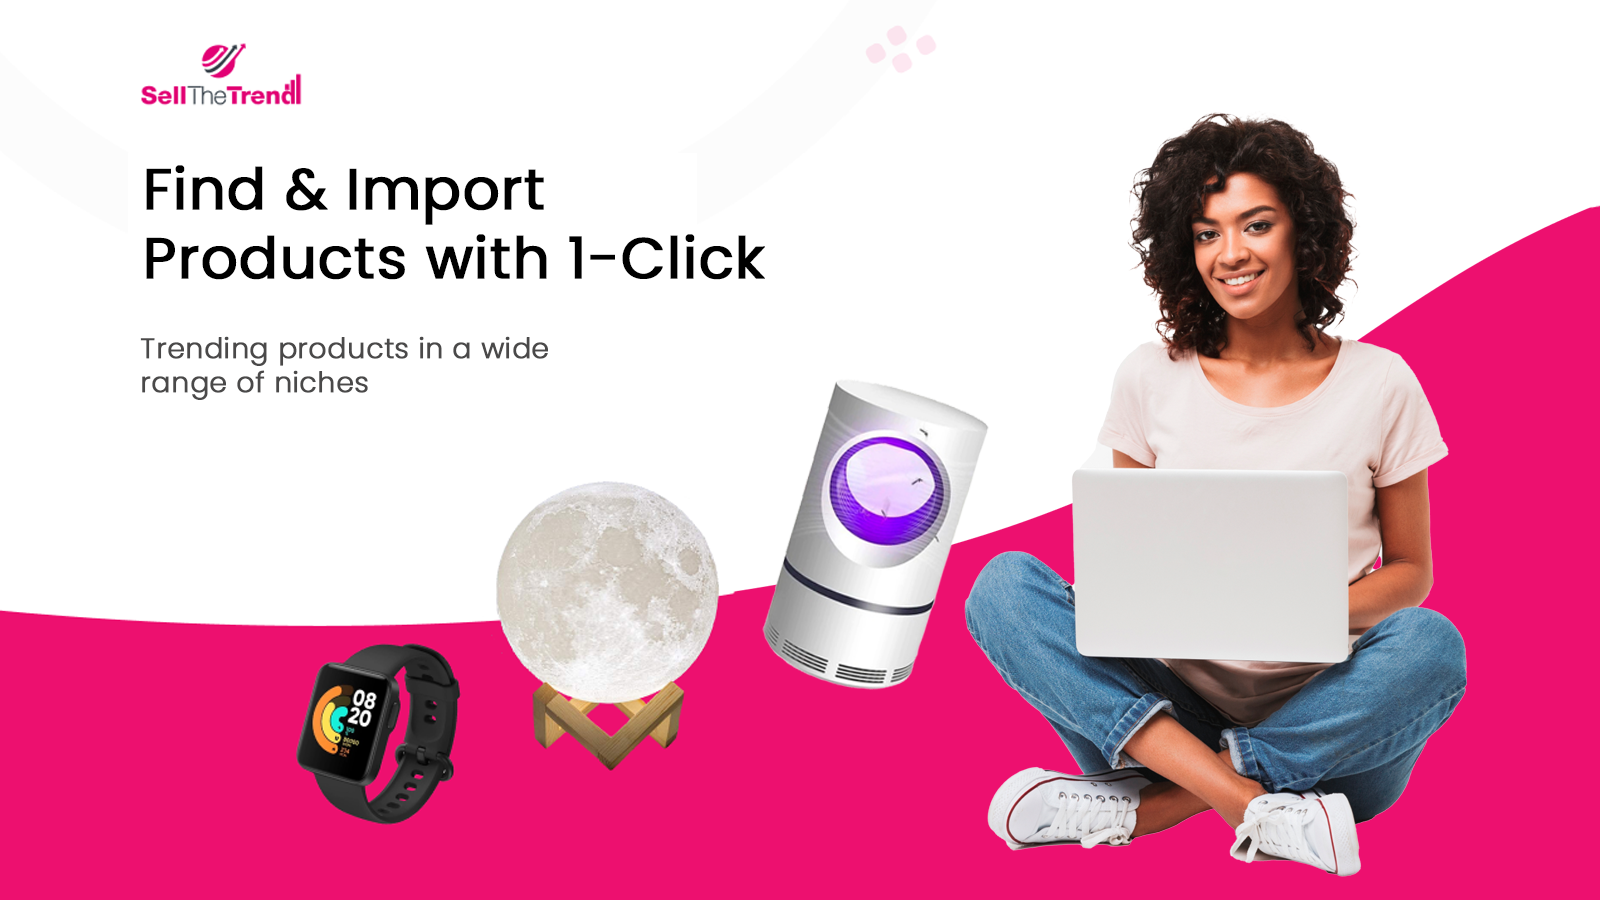 Finden und importieren Sie Produkte mit 1-Klick